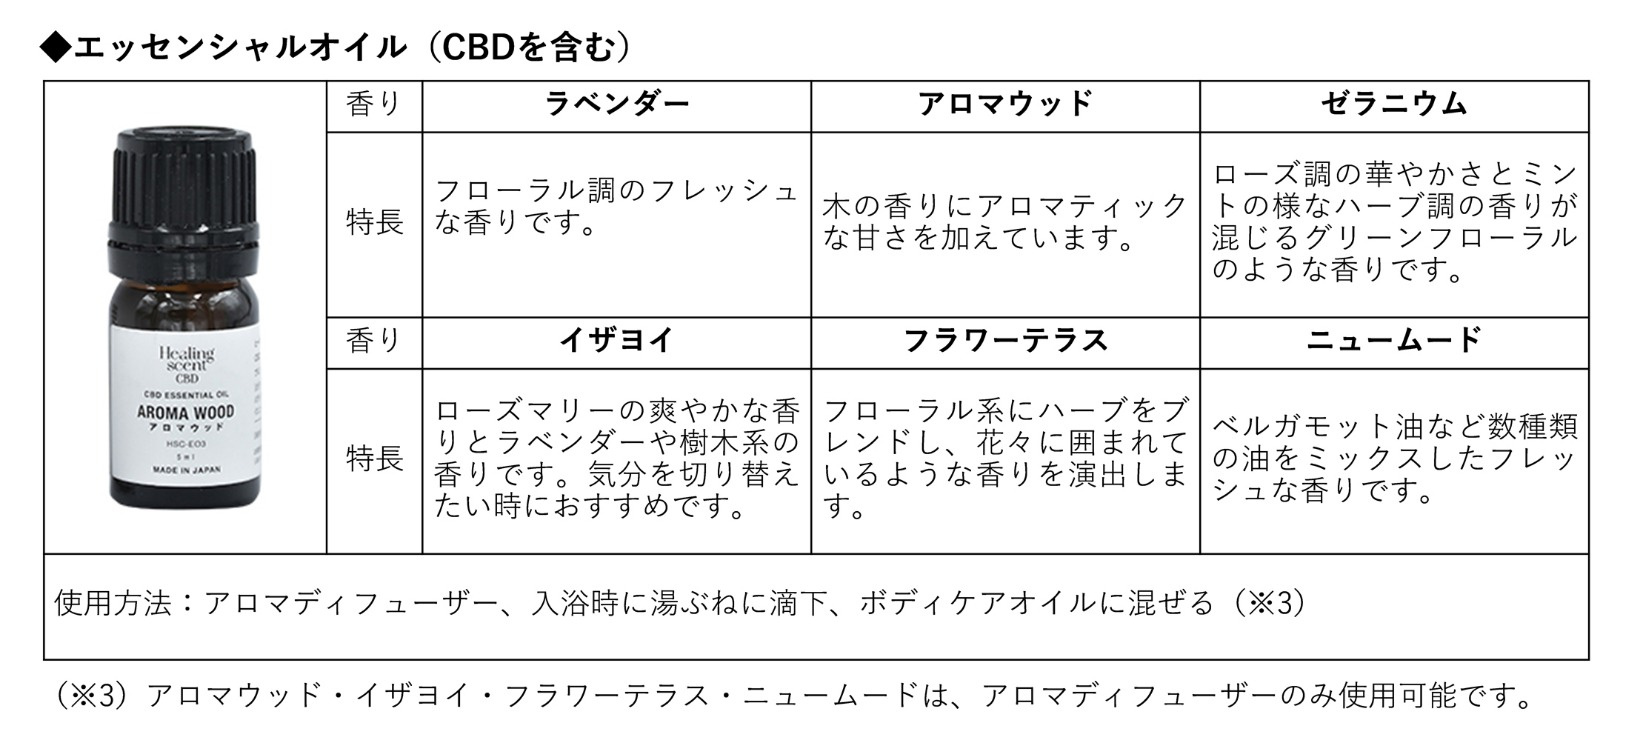 【バラ売りOK】ヒーリングセントCBDエッセンシャルオイル 6種